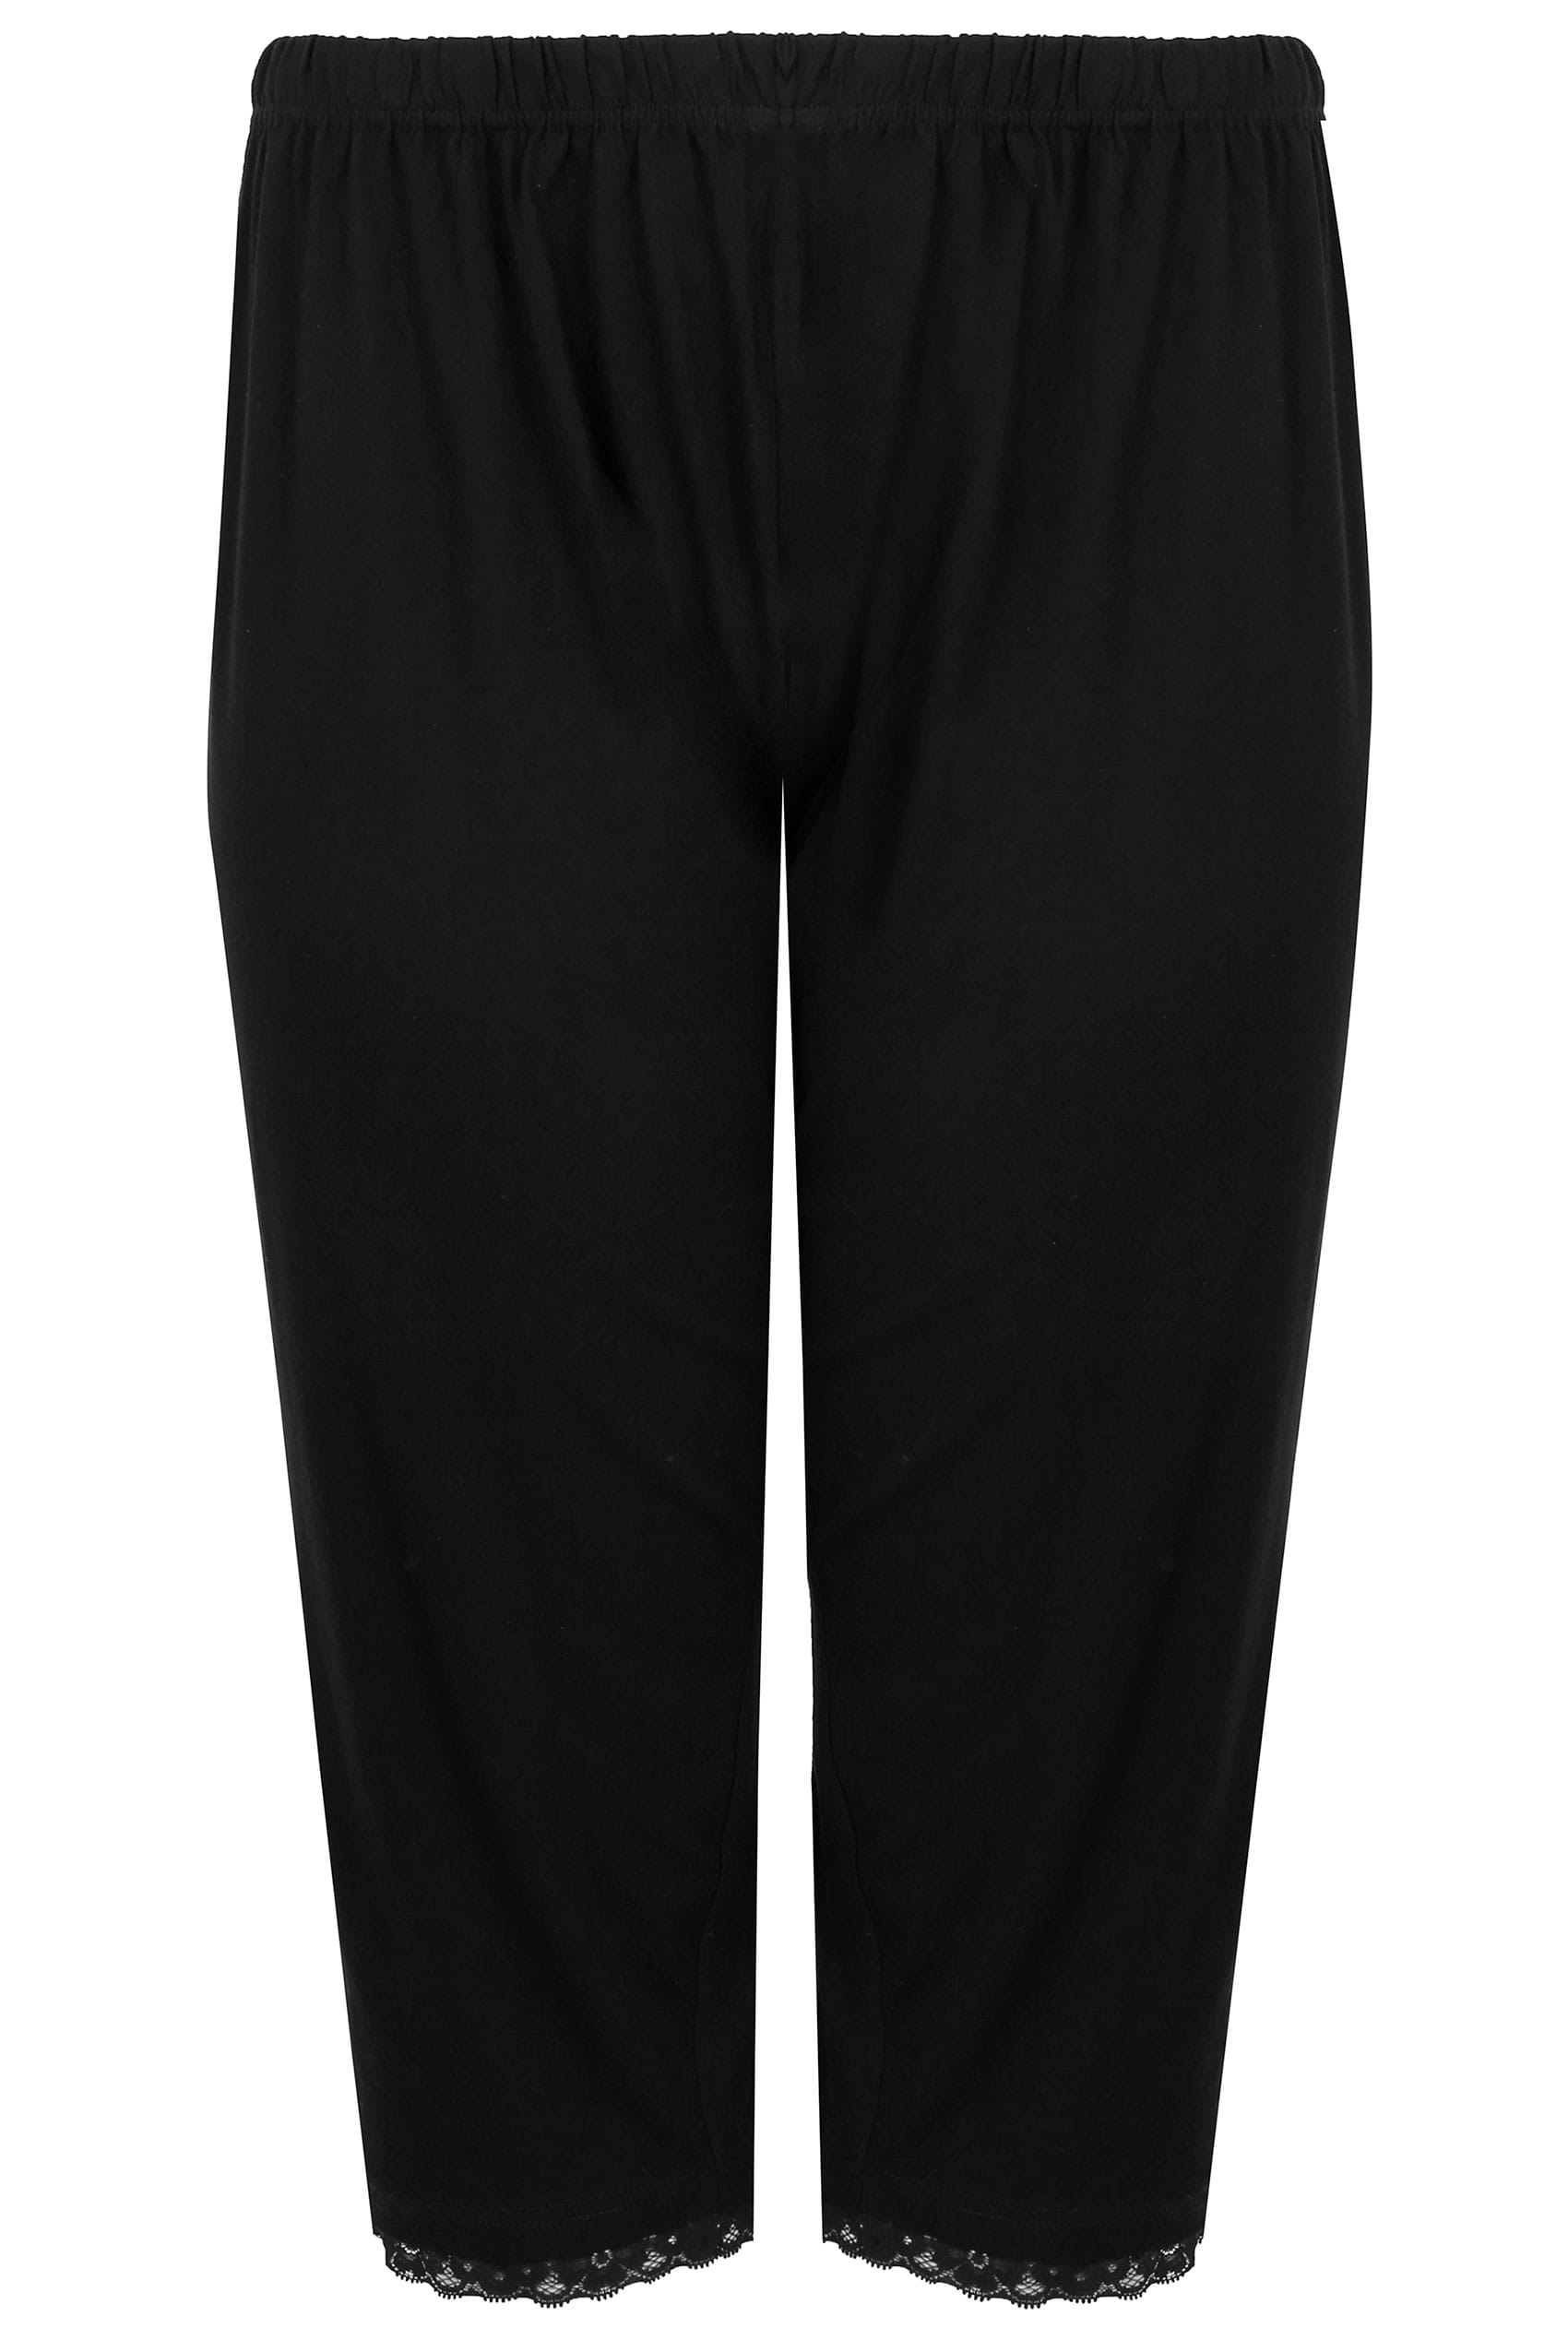 Plus Size Black Lace Trim Crop Pyjama Bottoms | Yours Clothing